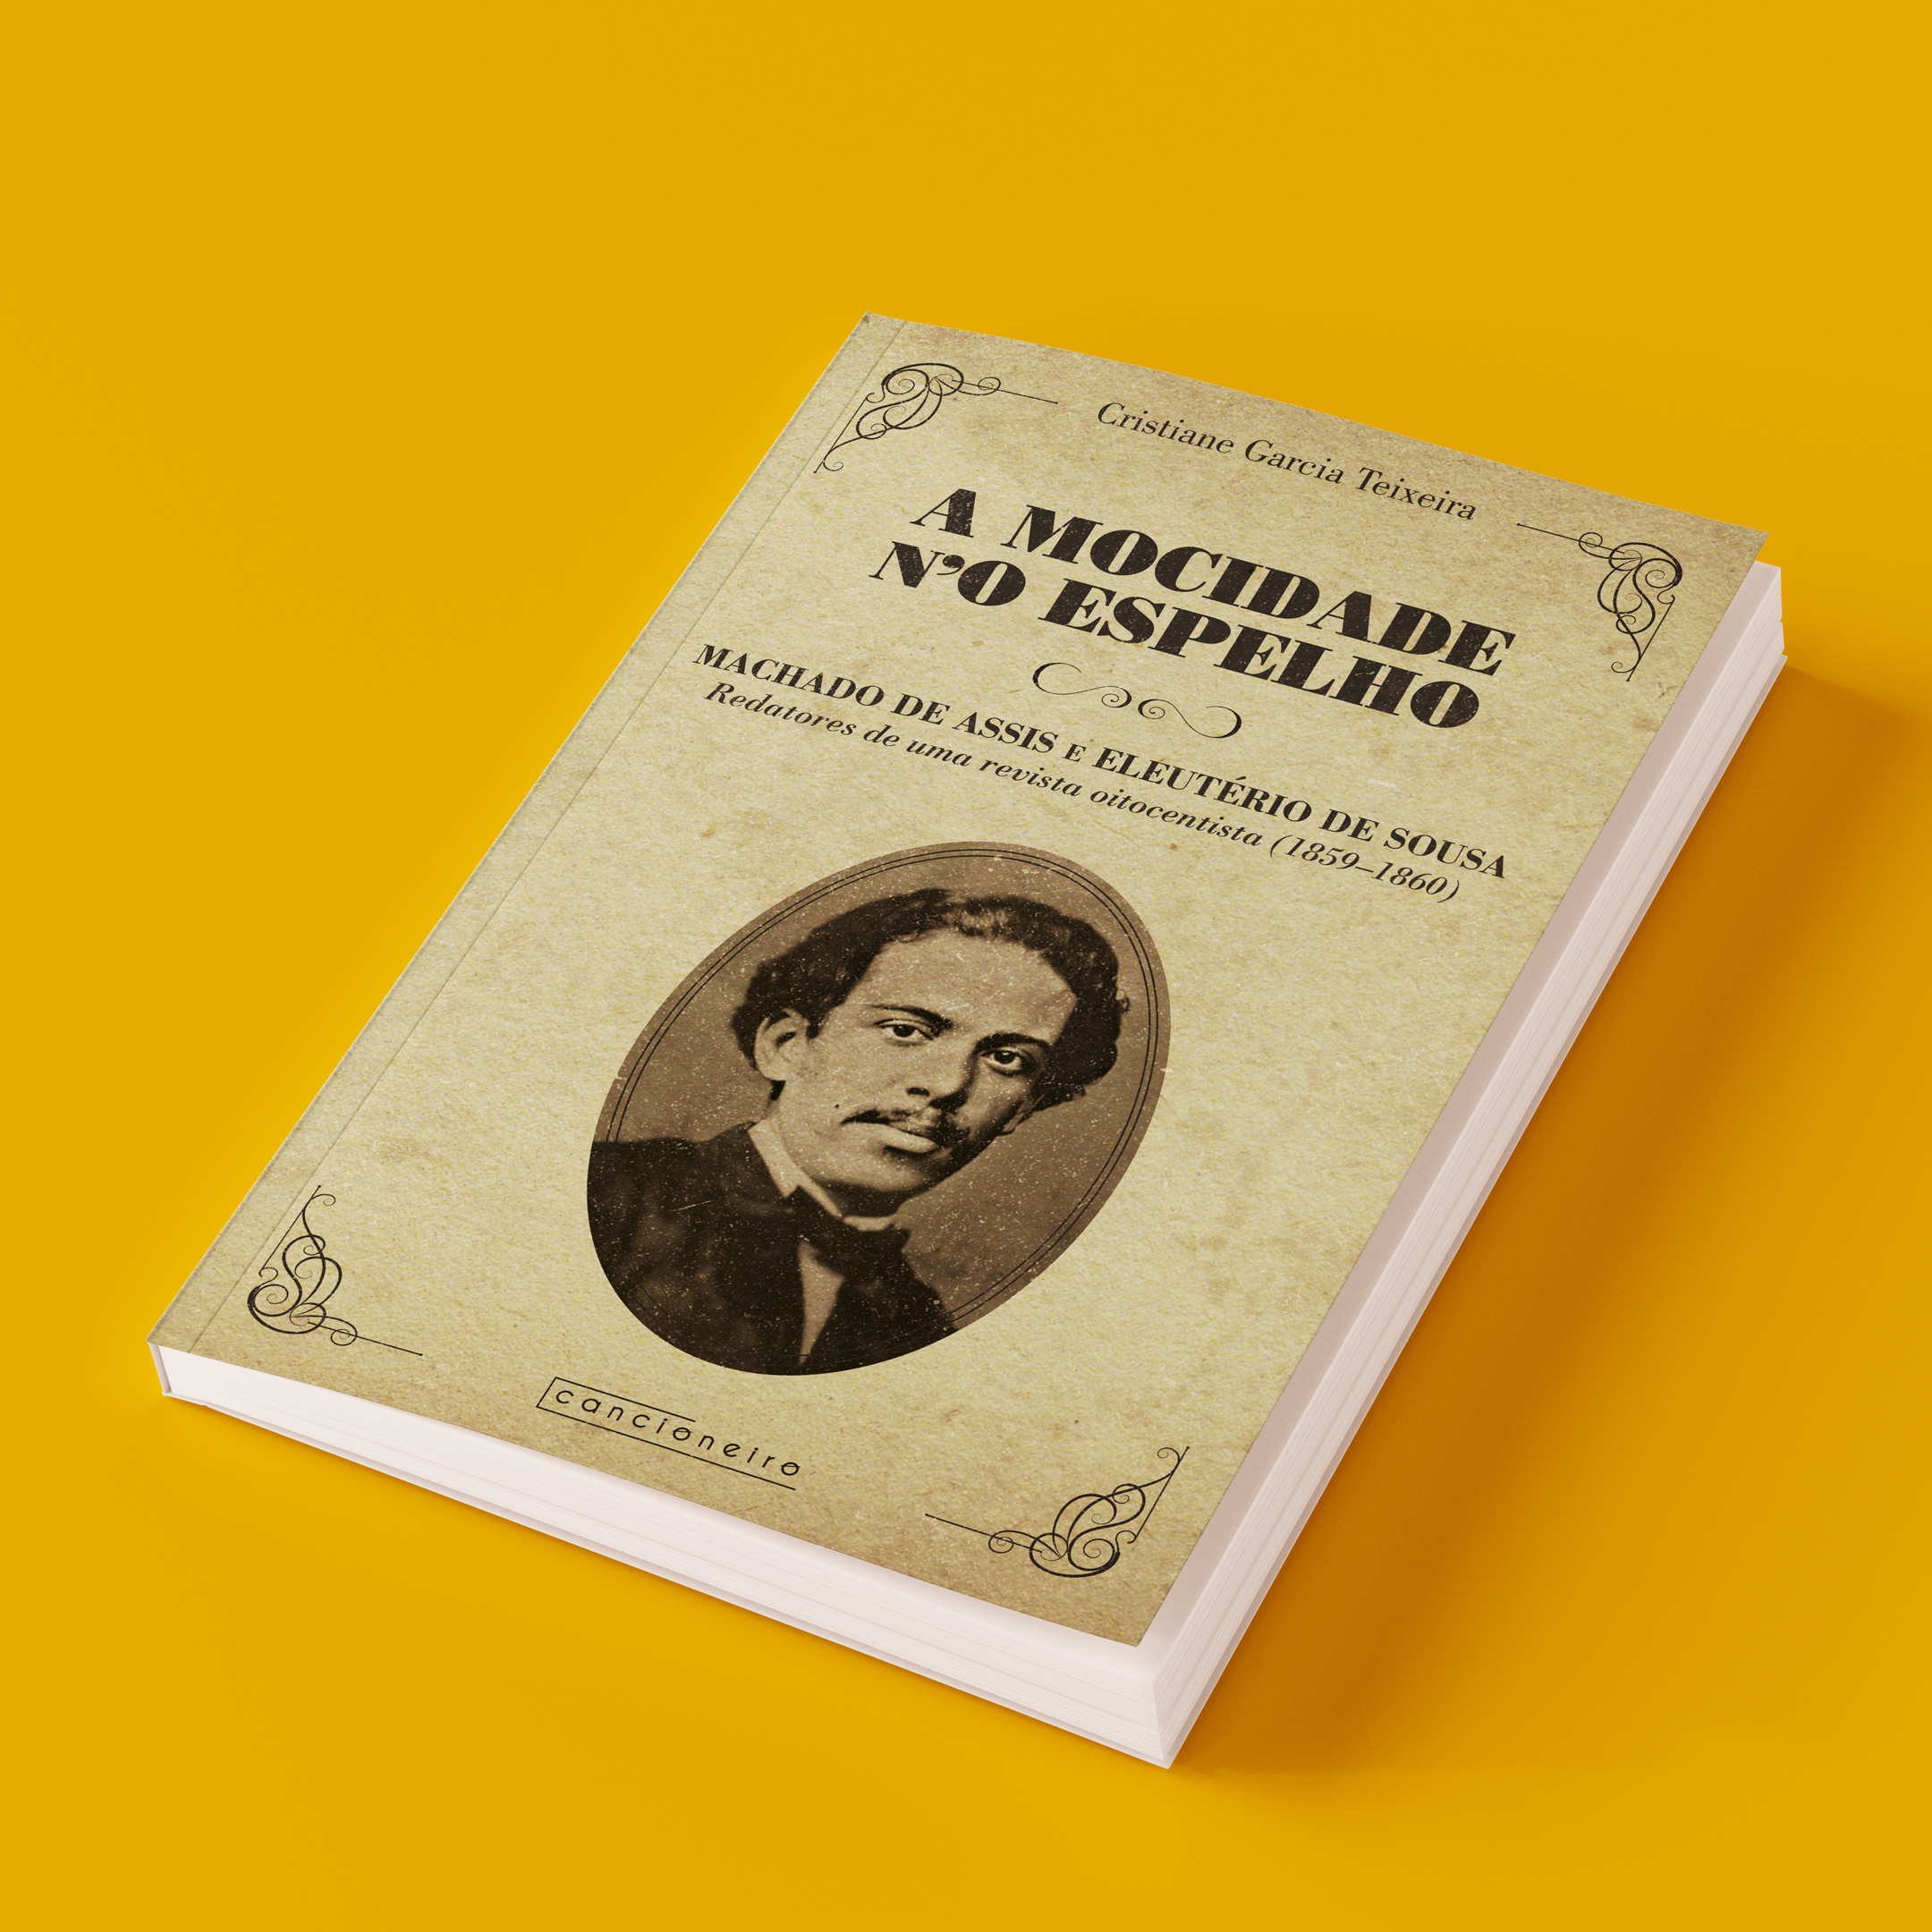 Filosofia e Literatura - — Machado de Assis, 1839-1908. Memórias